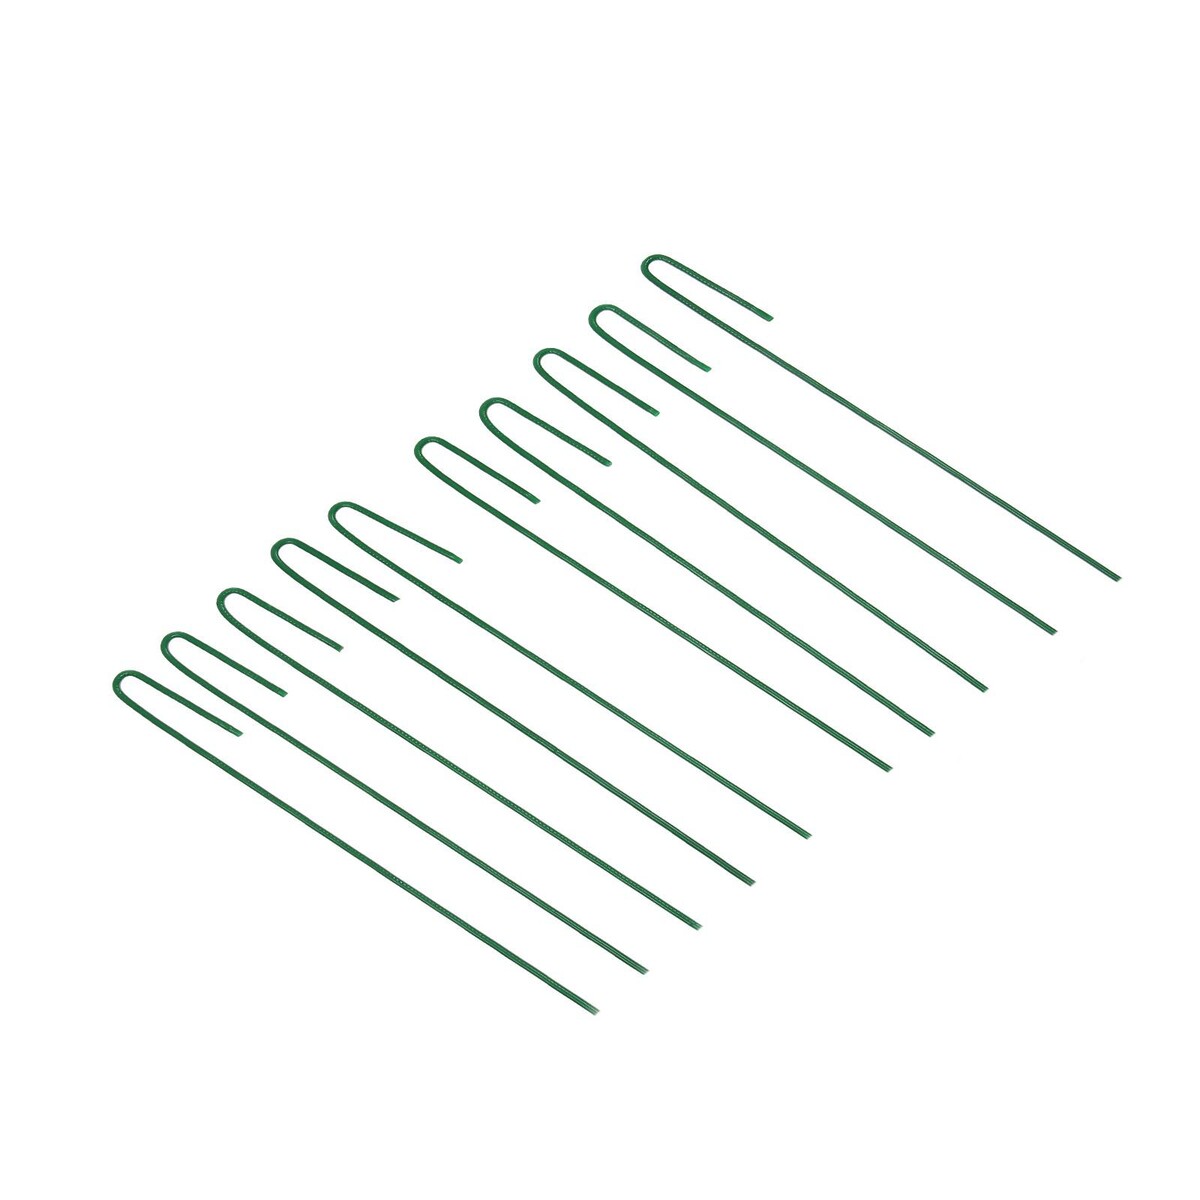 фото Колышек универсальный, h = 30 см, ножка d = 0.3 см, набор 10 шт., зеленый, greengo